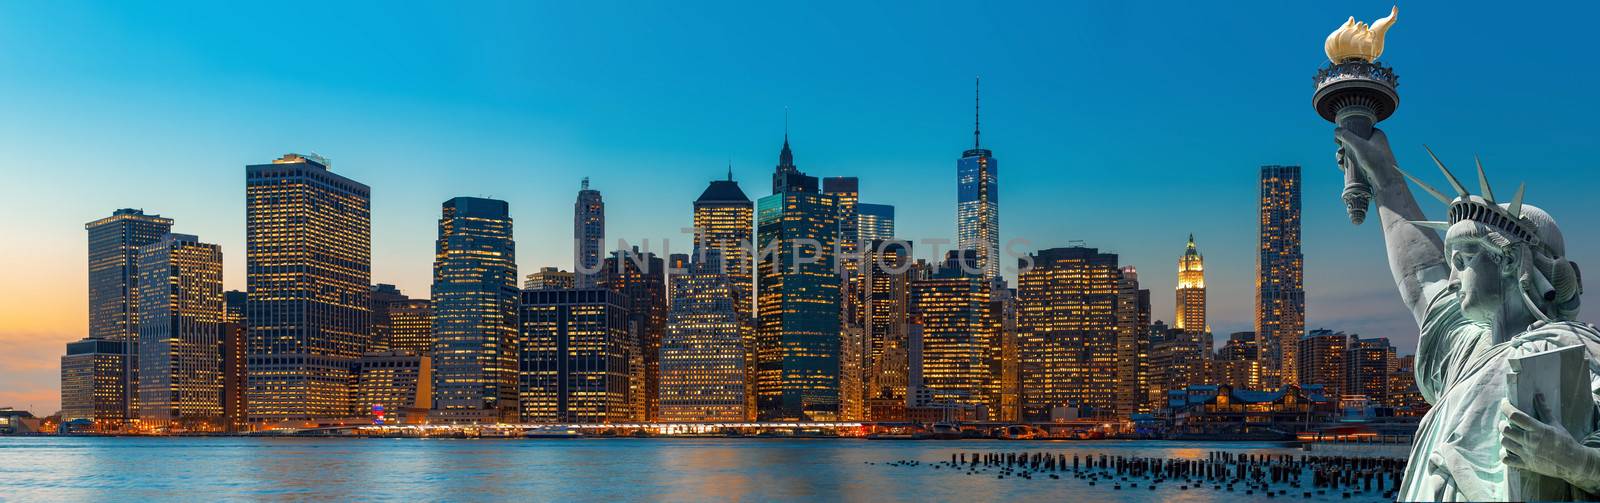 Evening New York City skyline panorama by palinchak